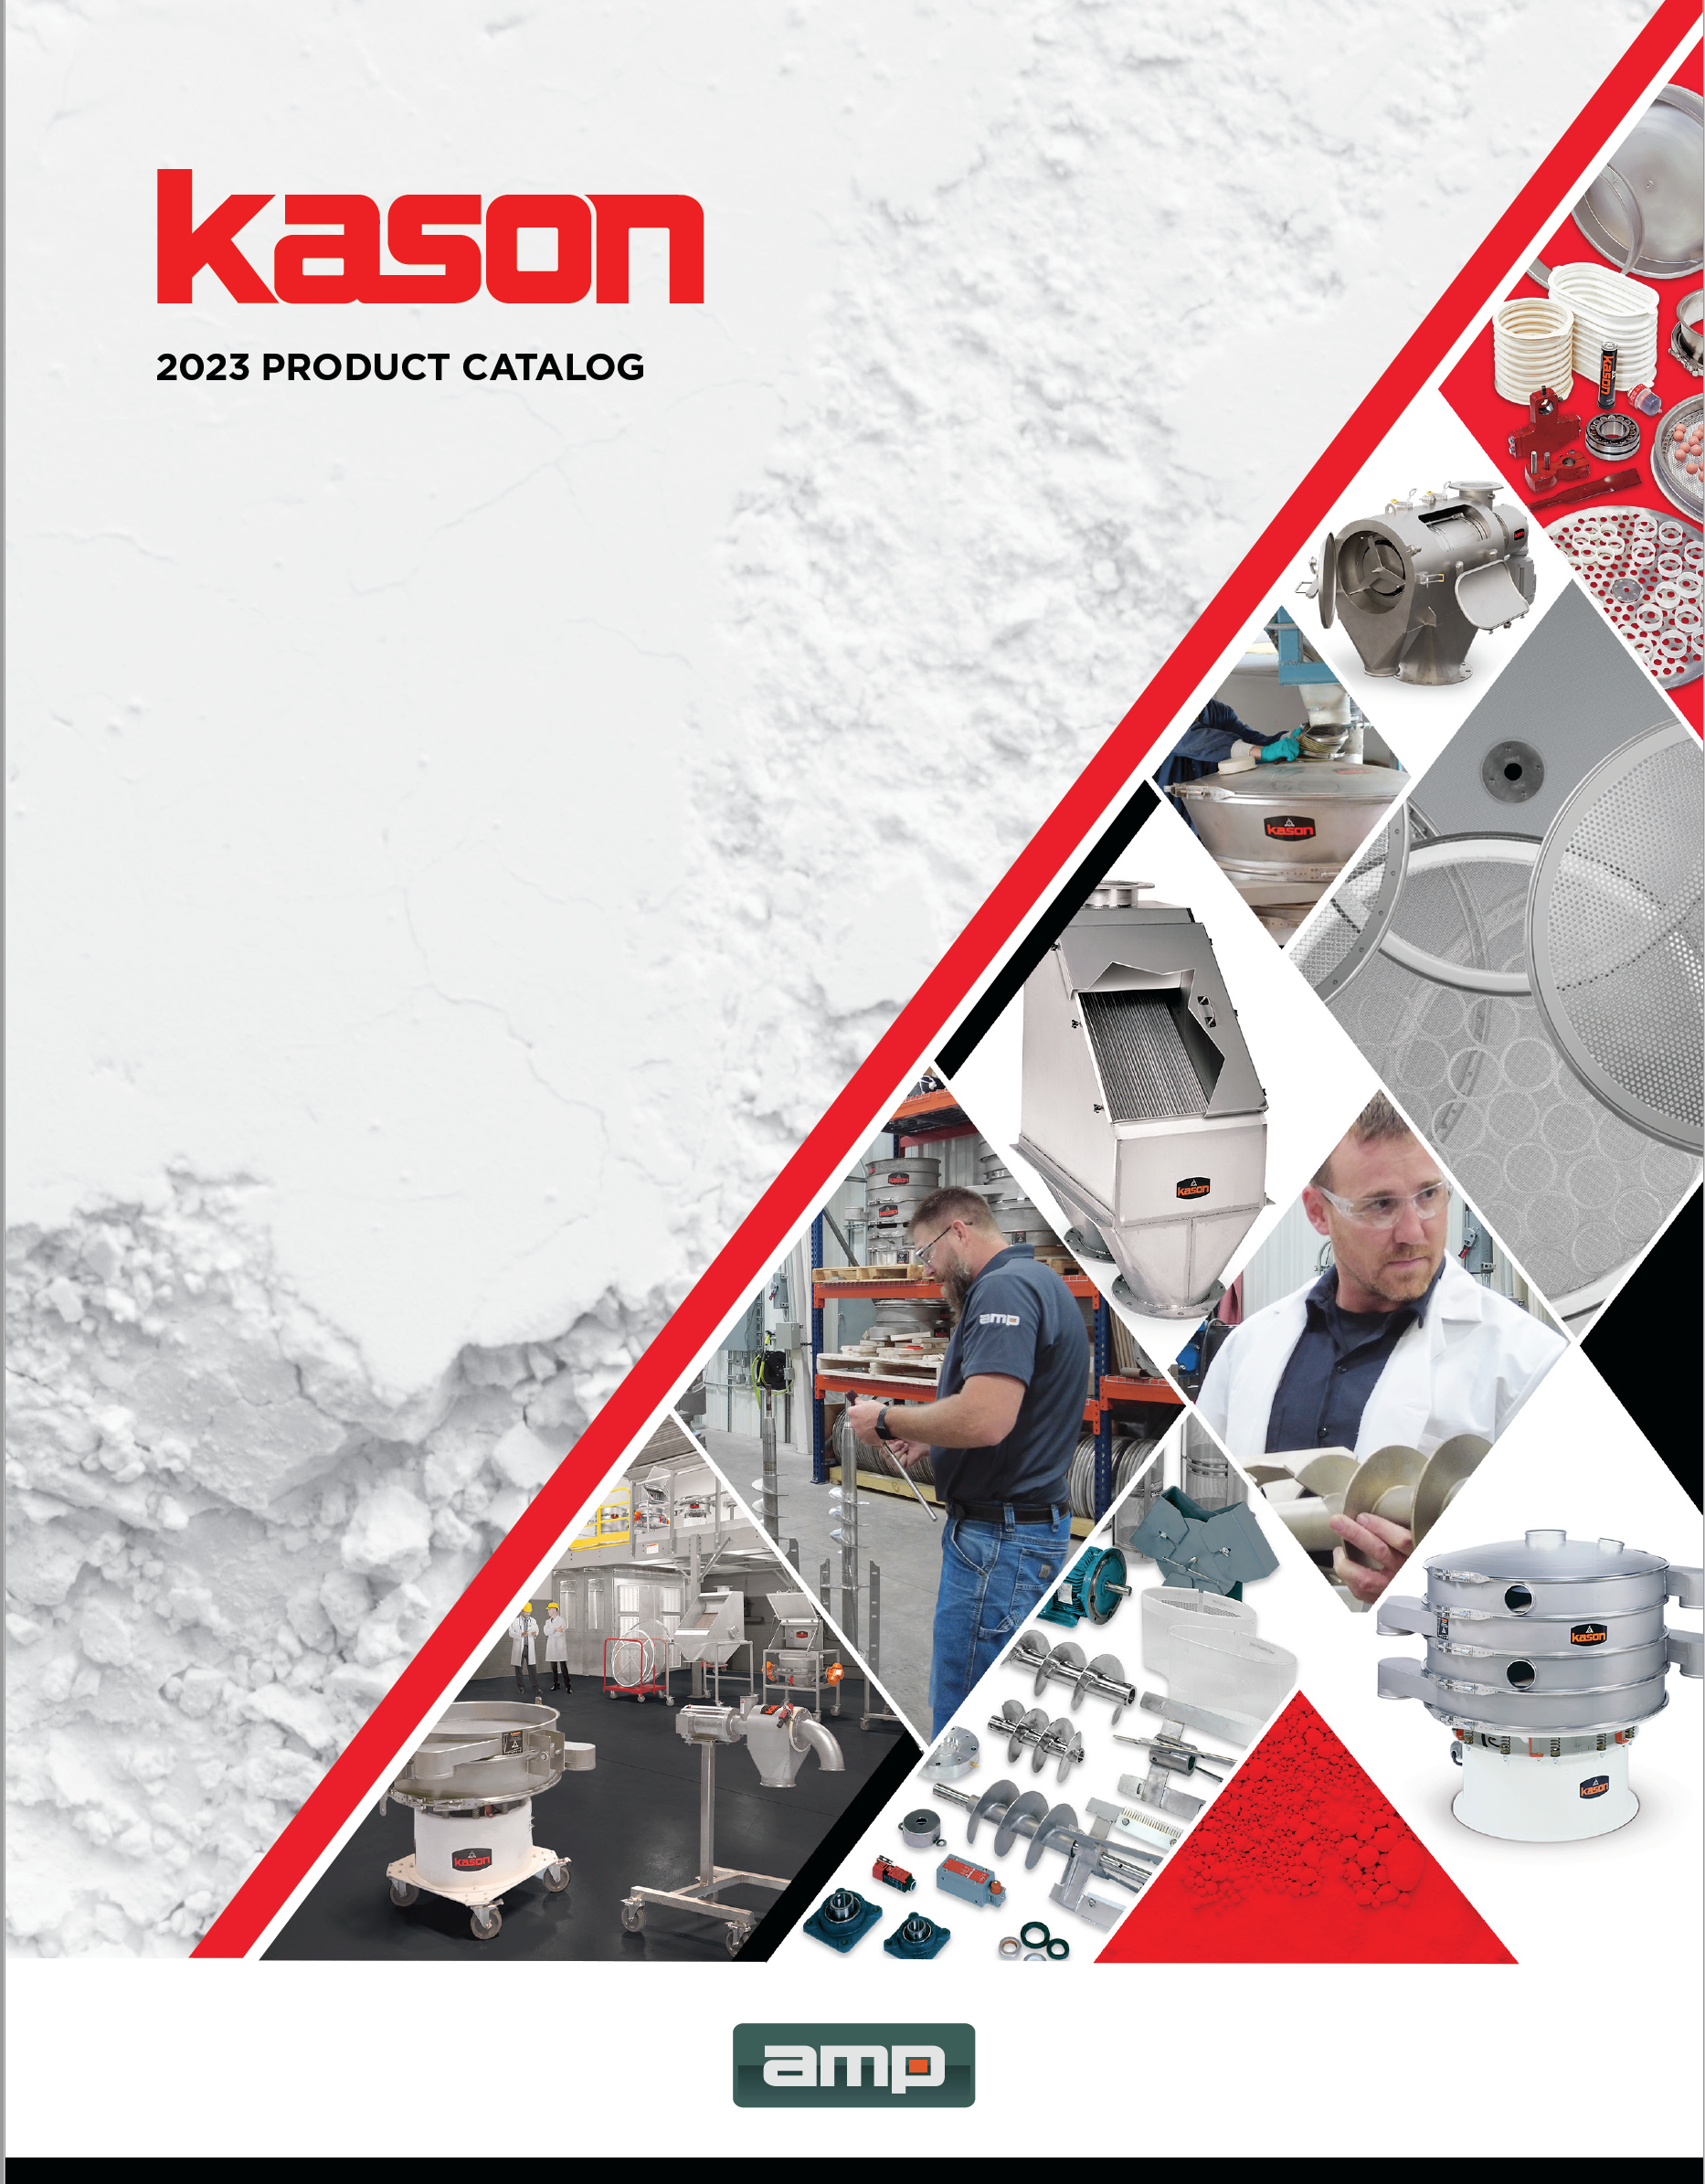 Kason 2023 Product Catalog